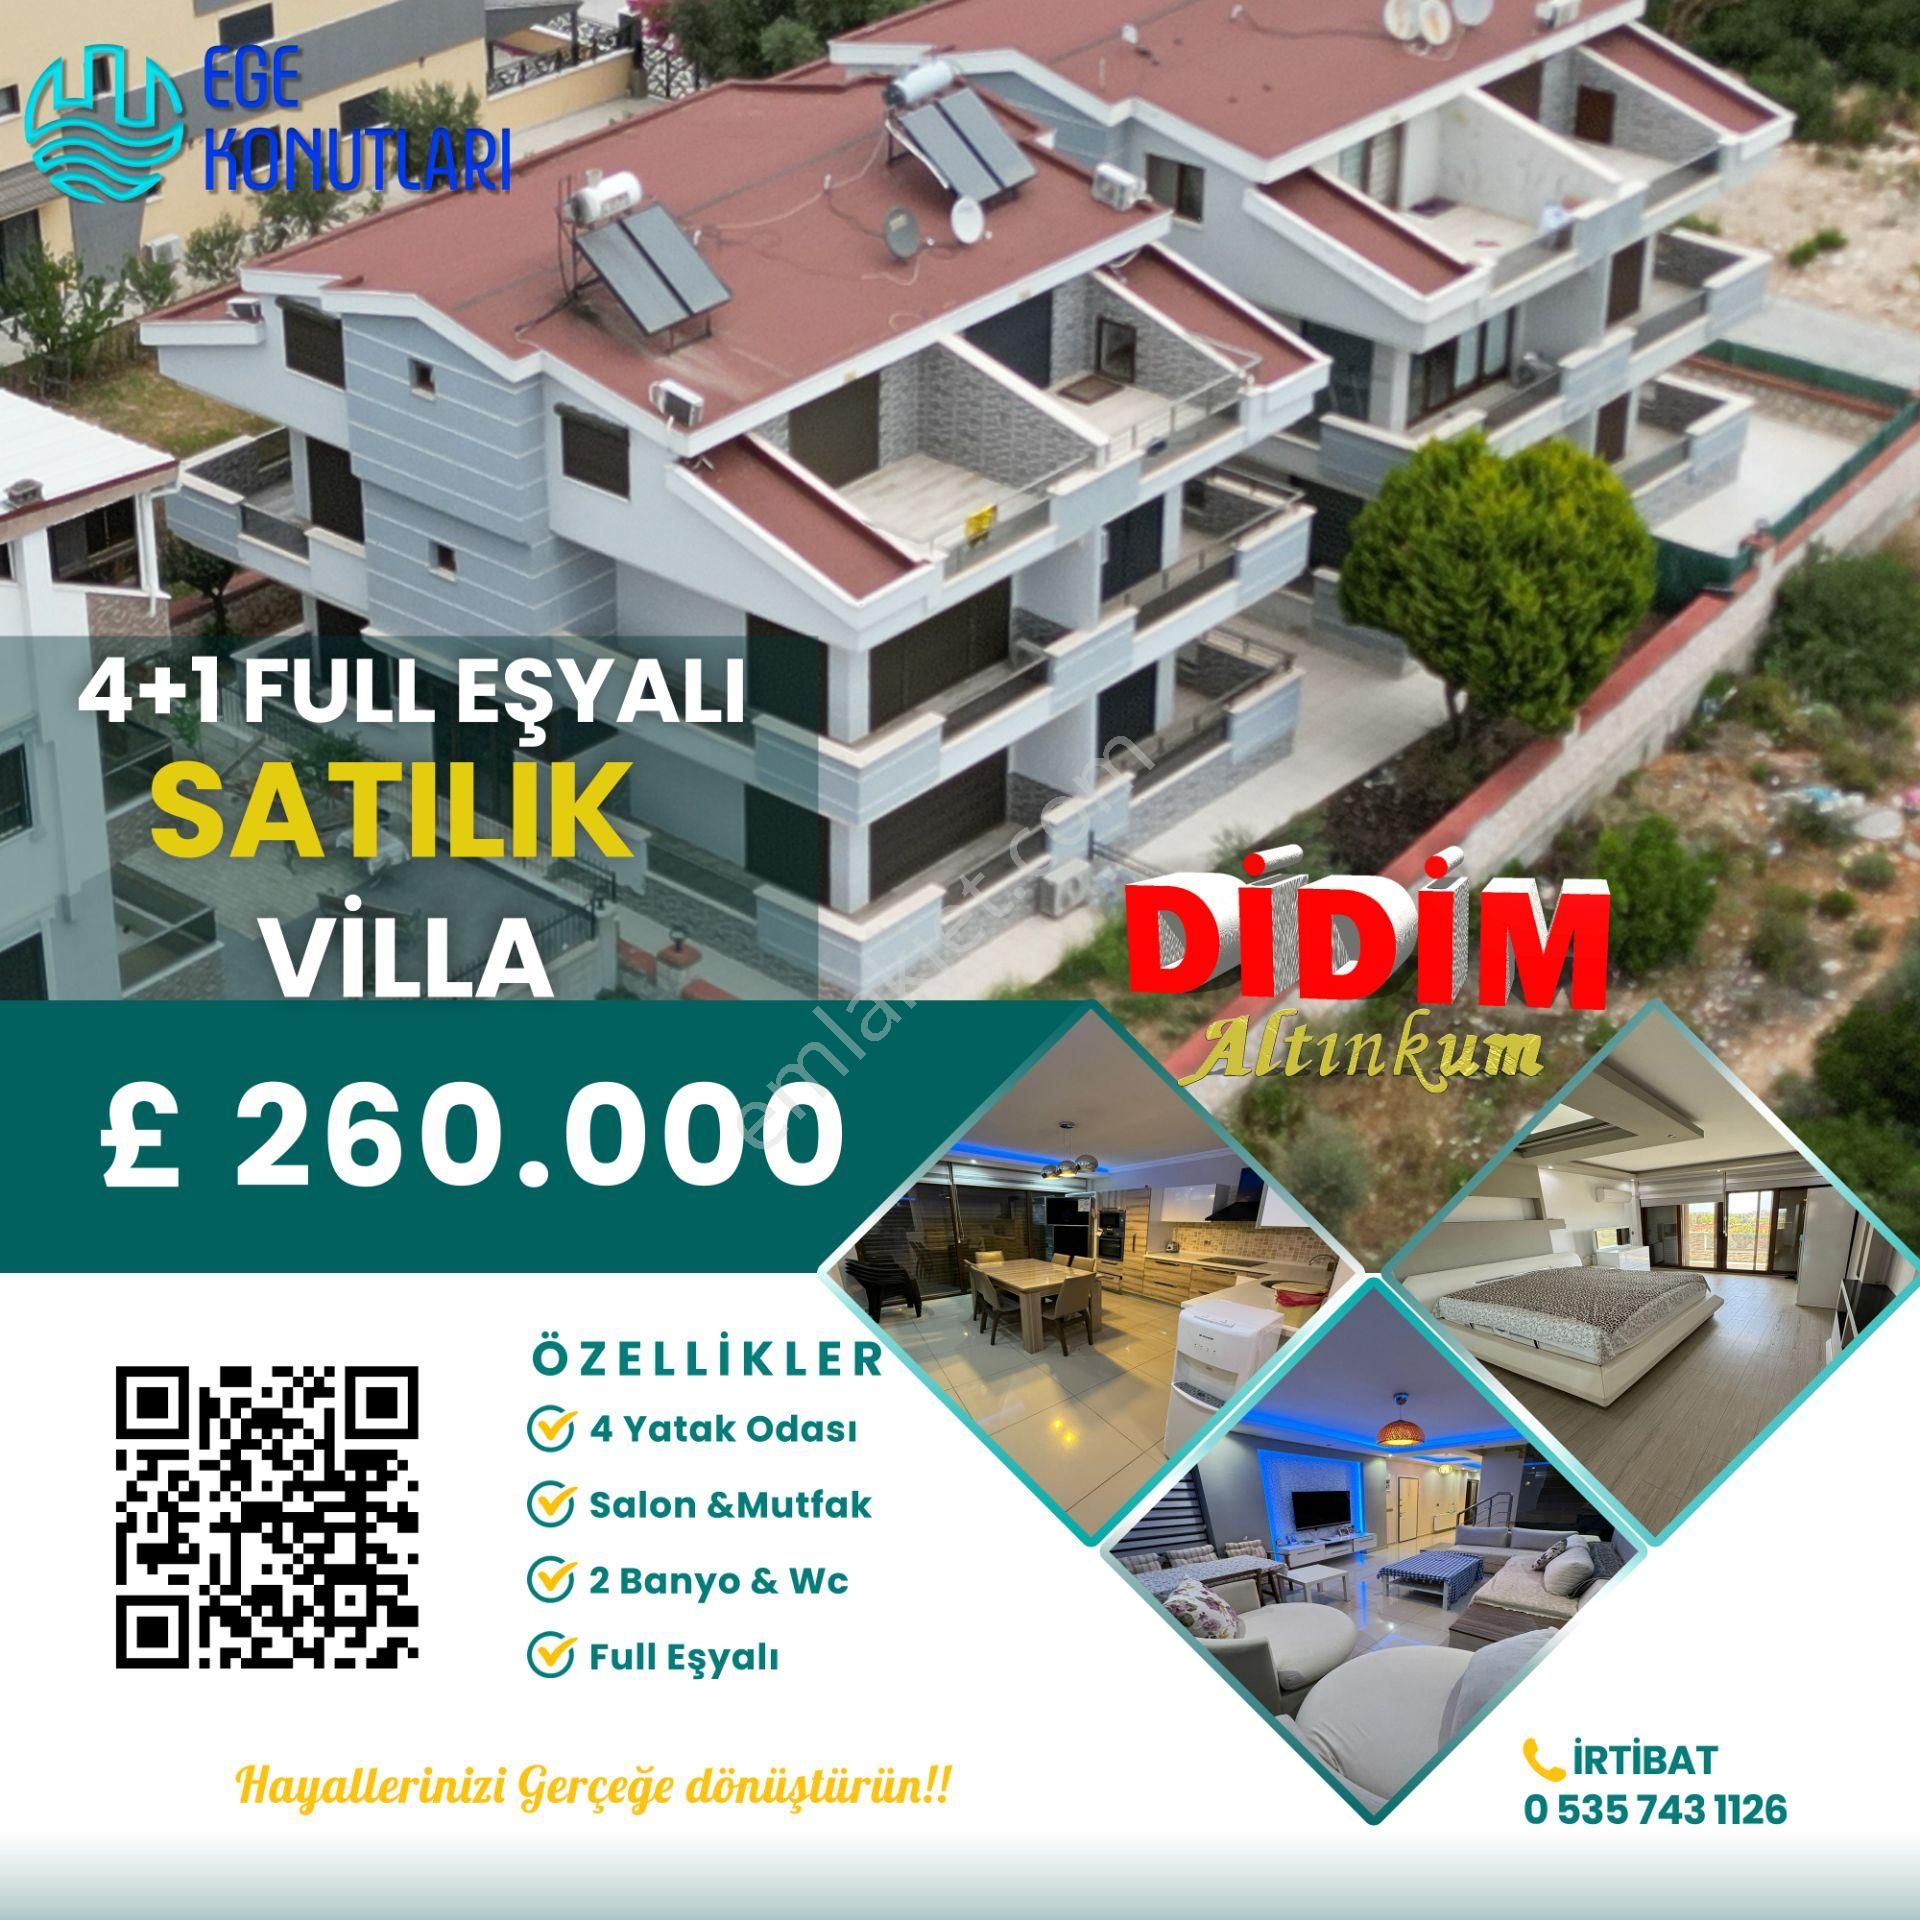 Didim Altınkum Satılık Villa  DİDİM ALTINKUMDA SATILIK EŞYALI 4+1 VİLLA